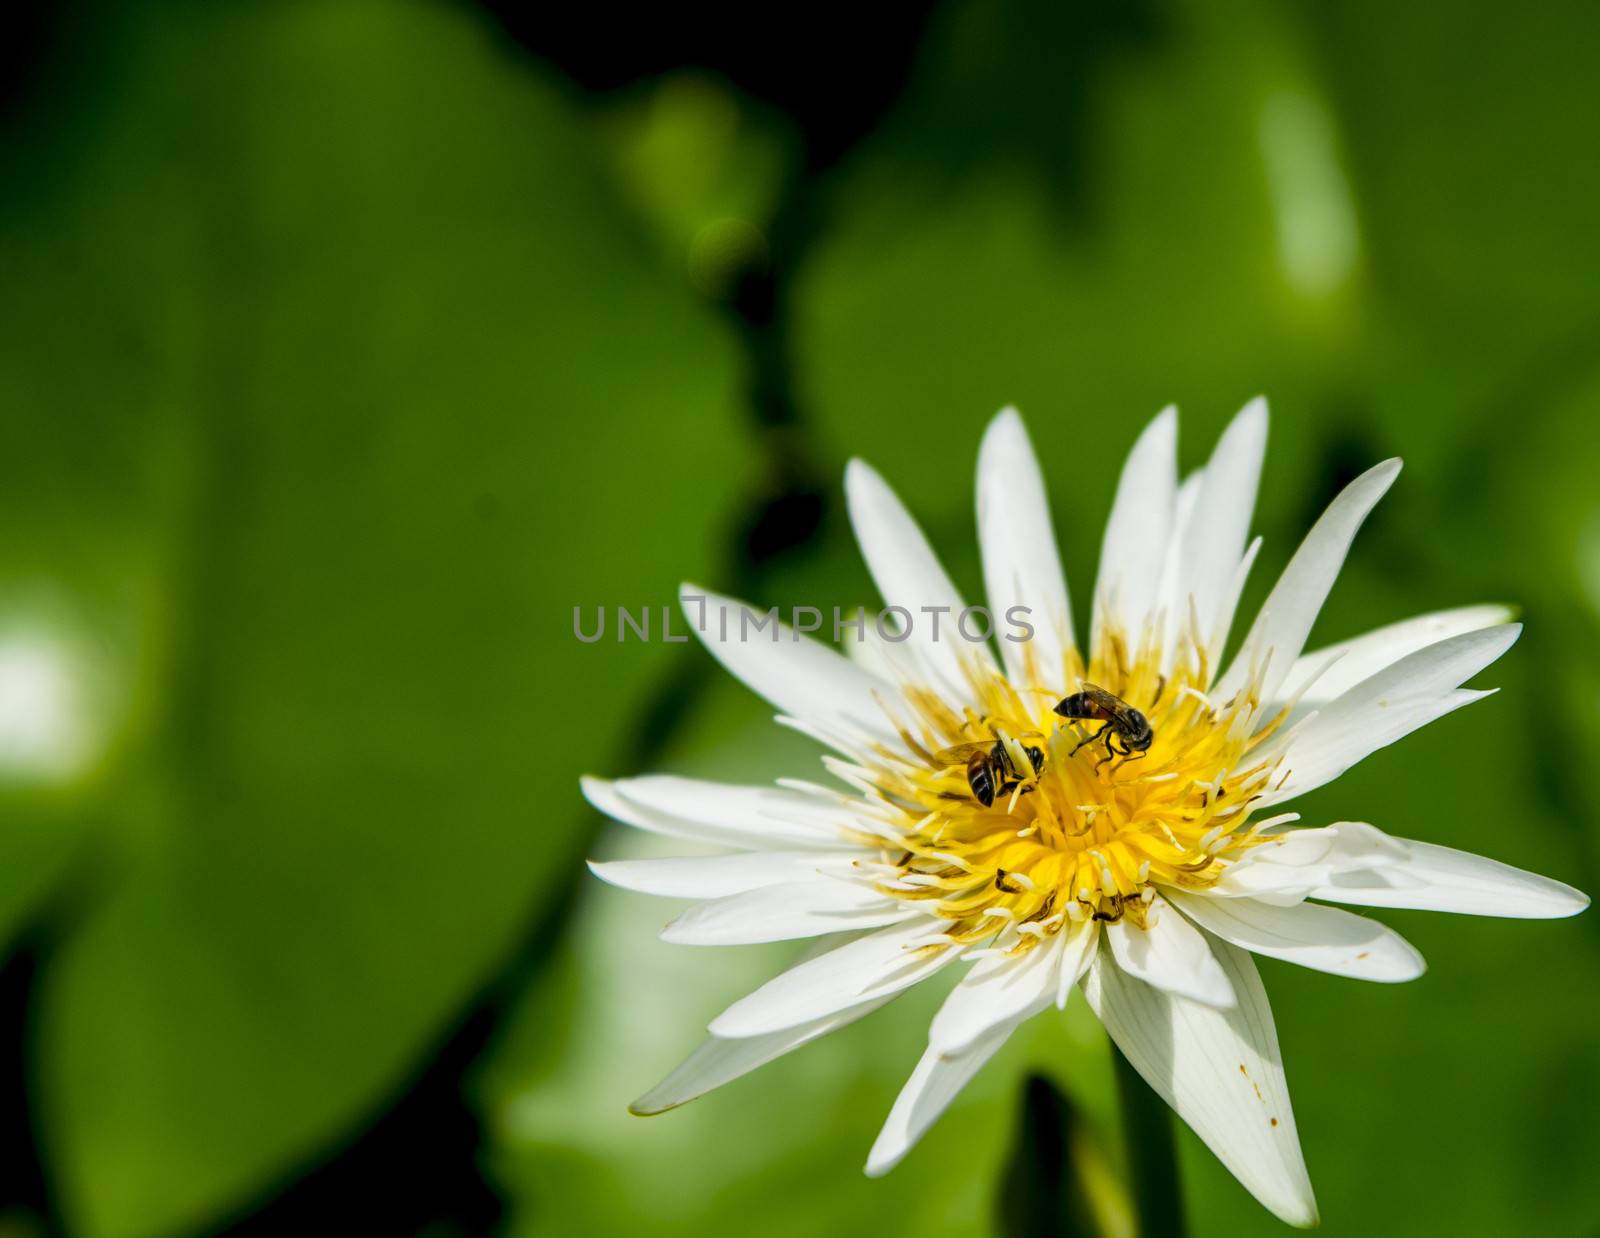 Bee on the lotus2 by gjeerawut